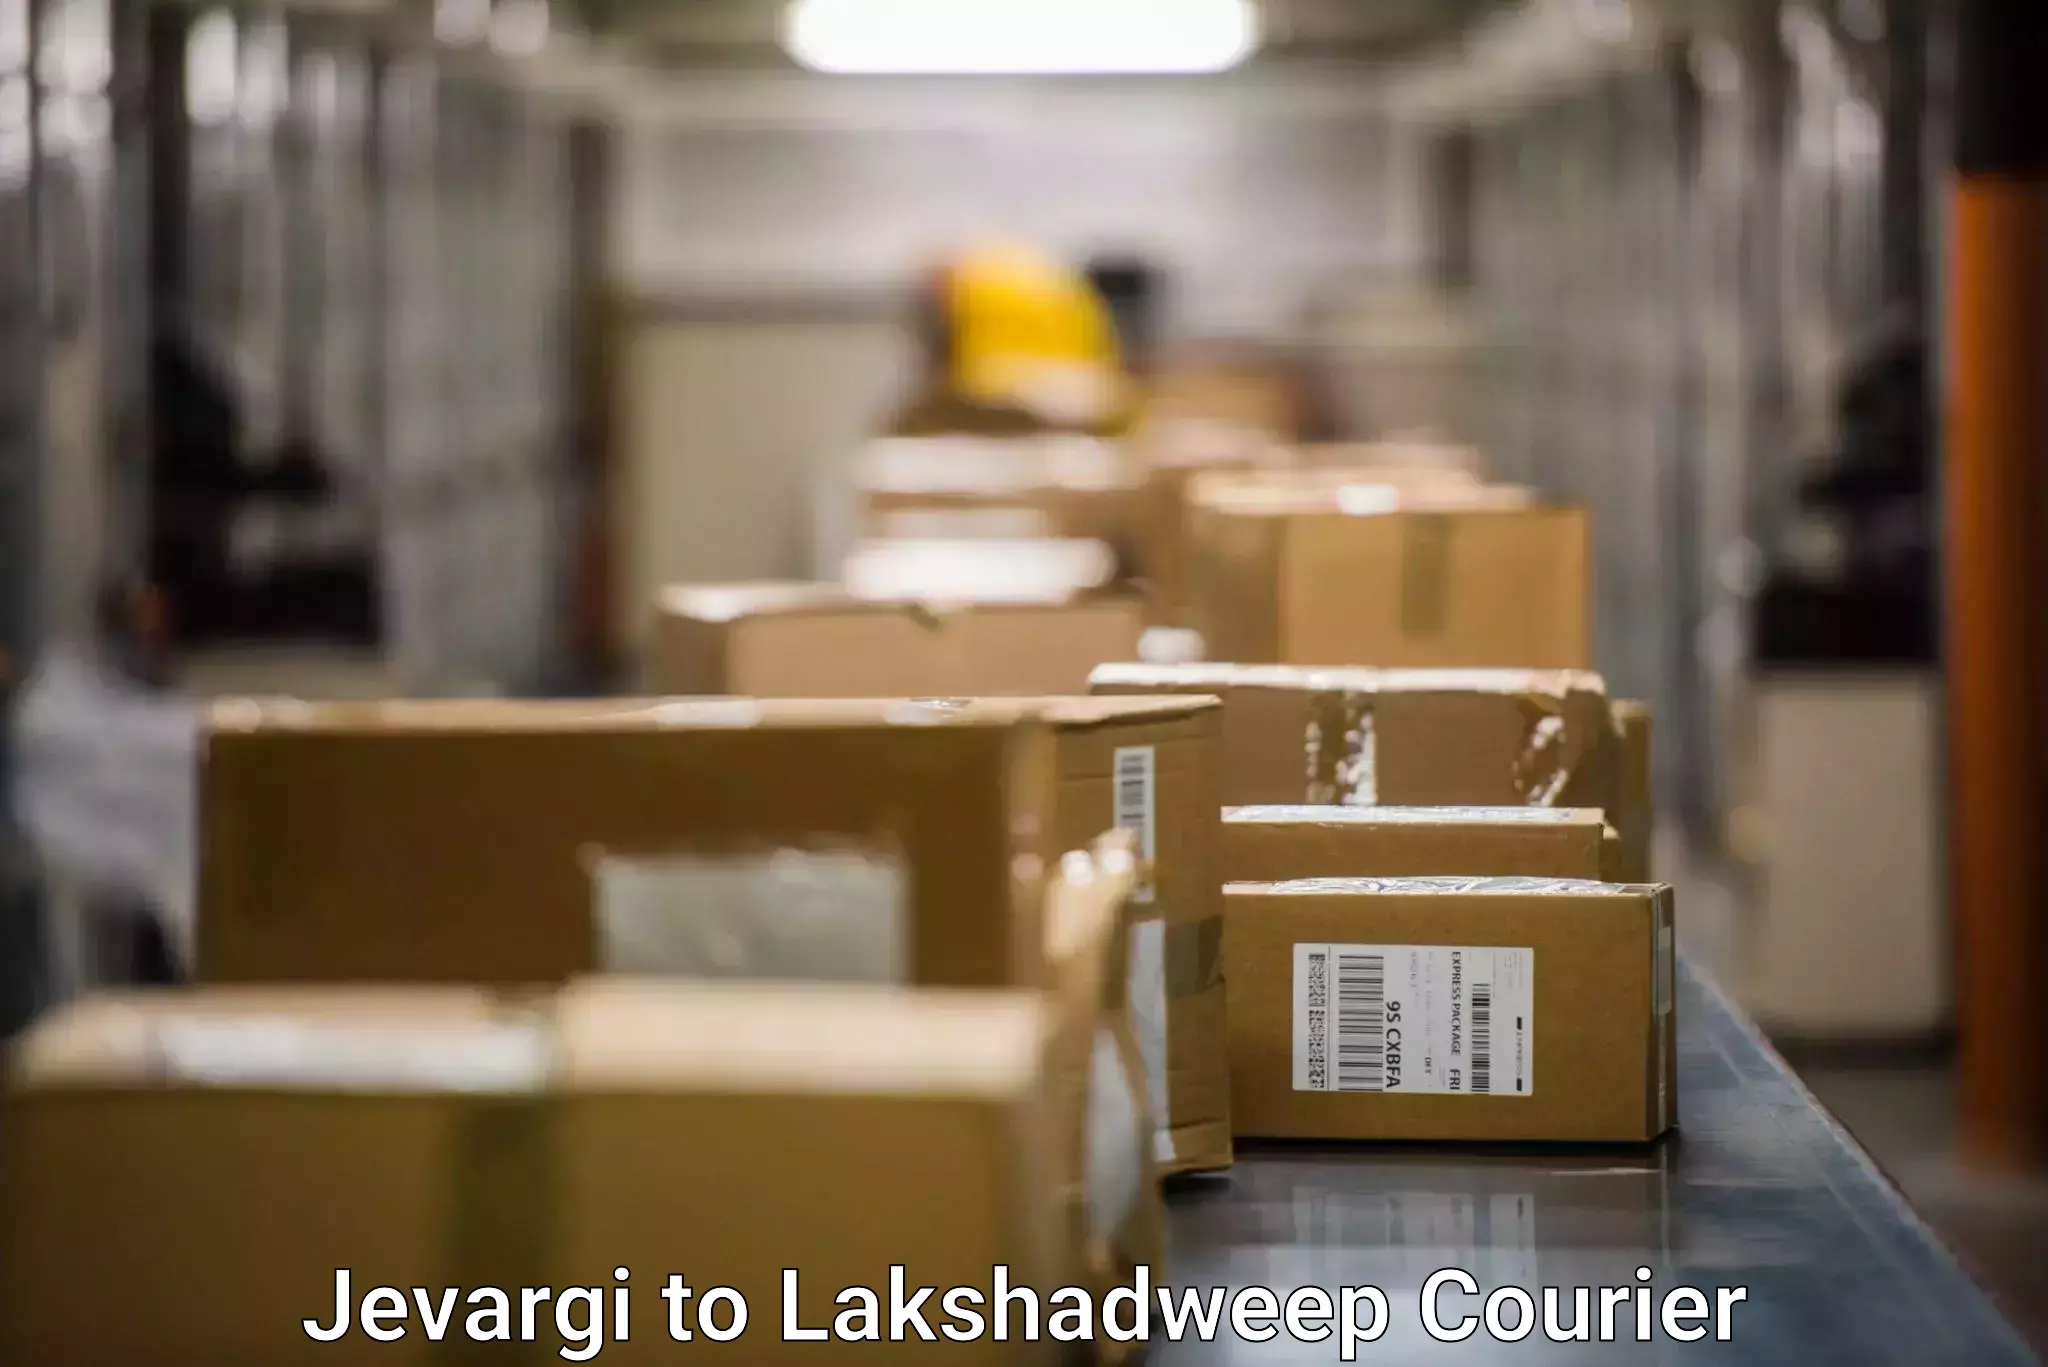 End-to-end delivery Jevargi to Lakshadweep